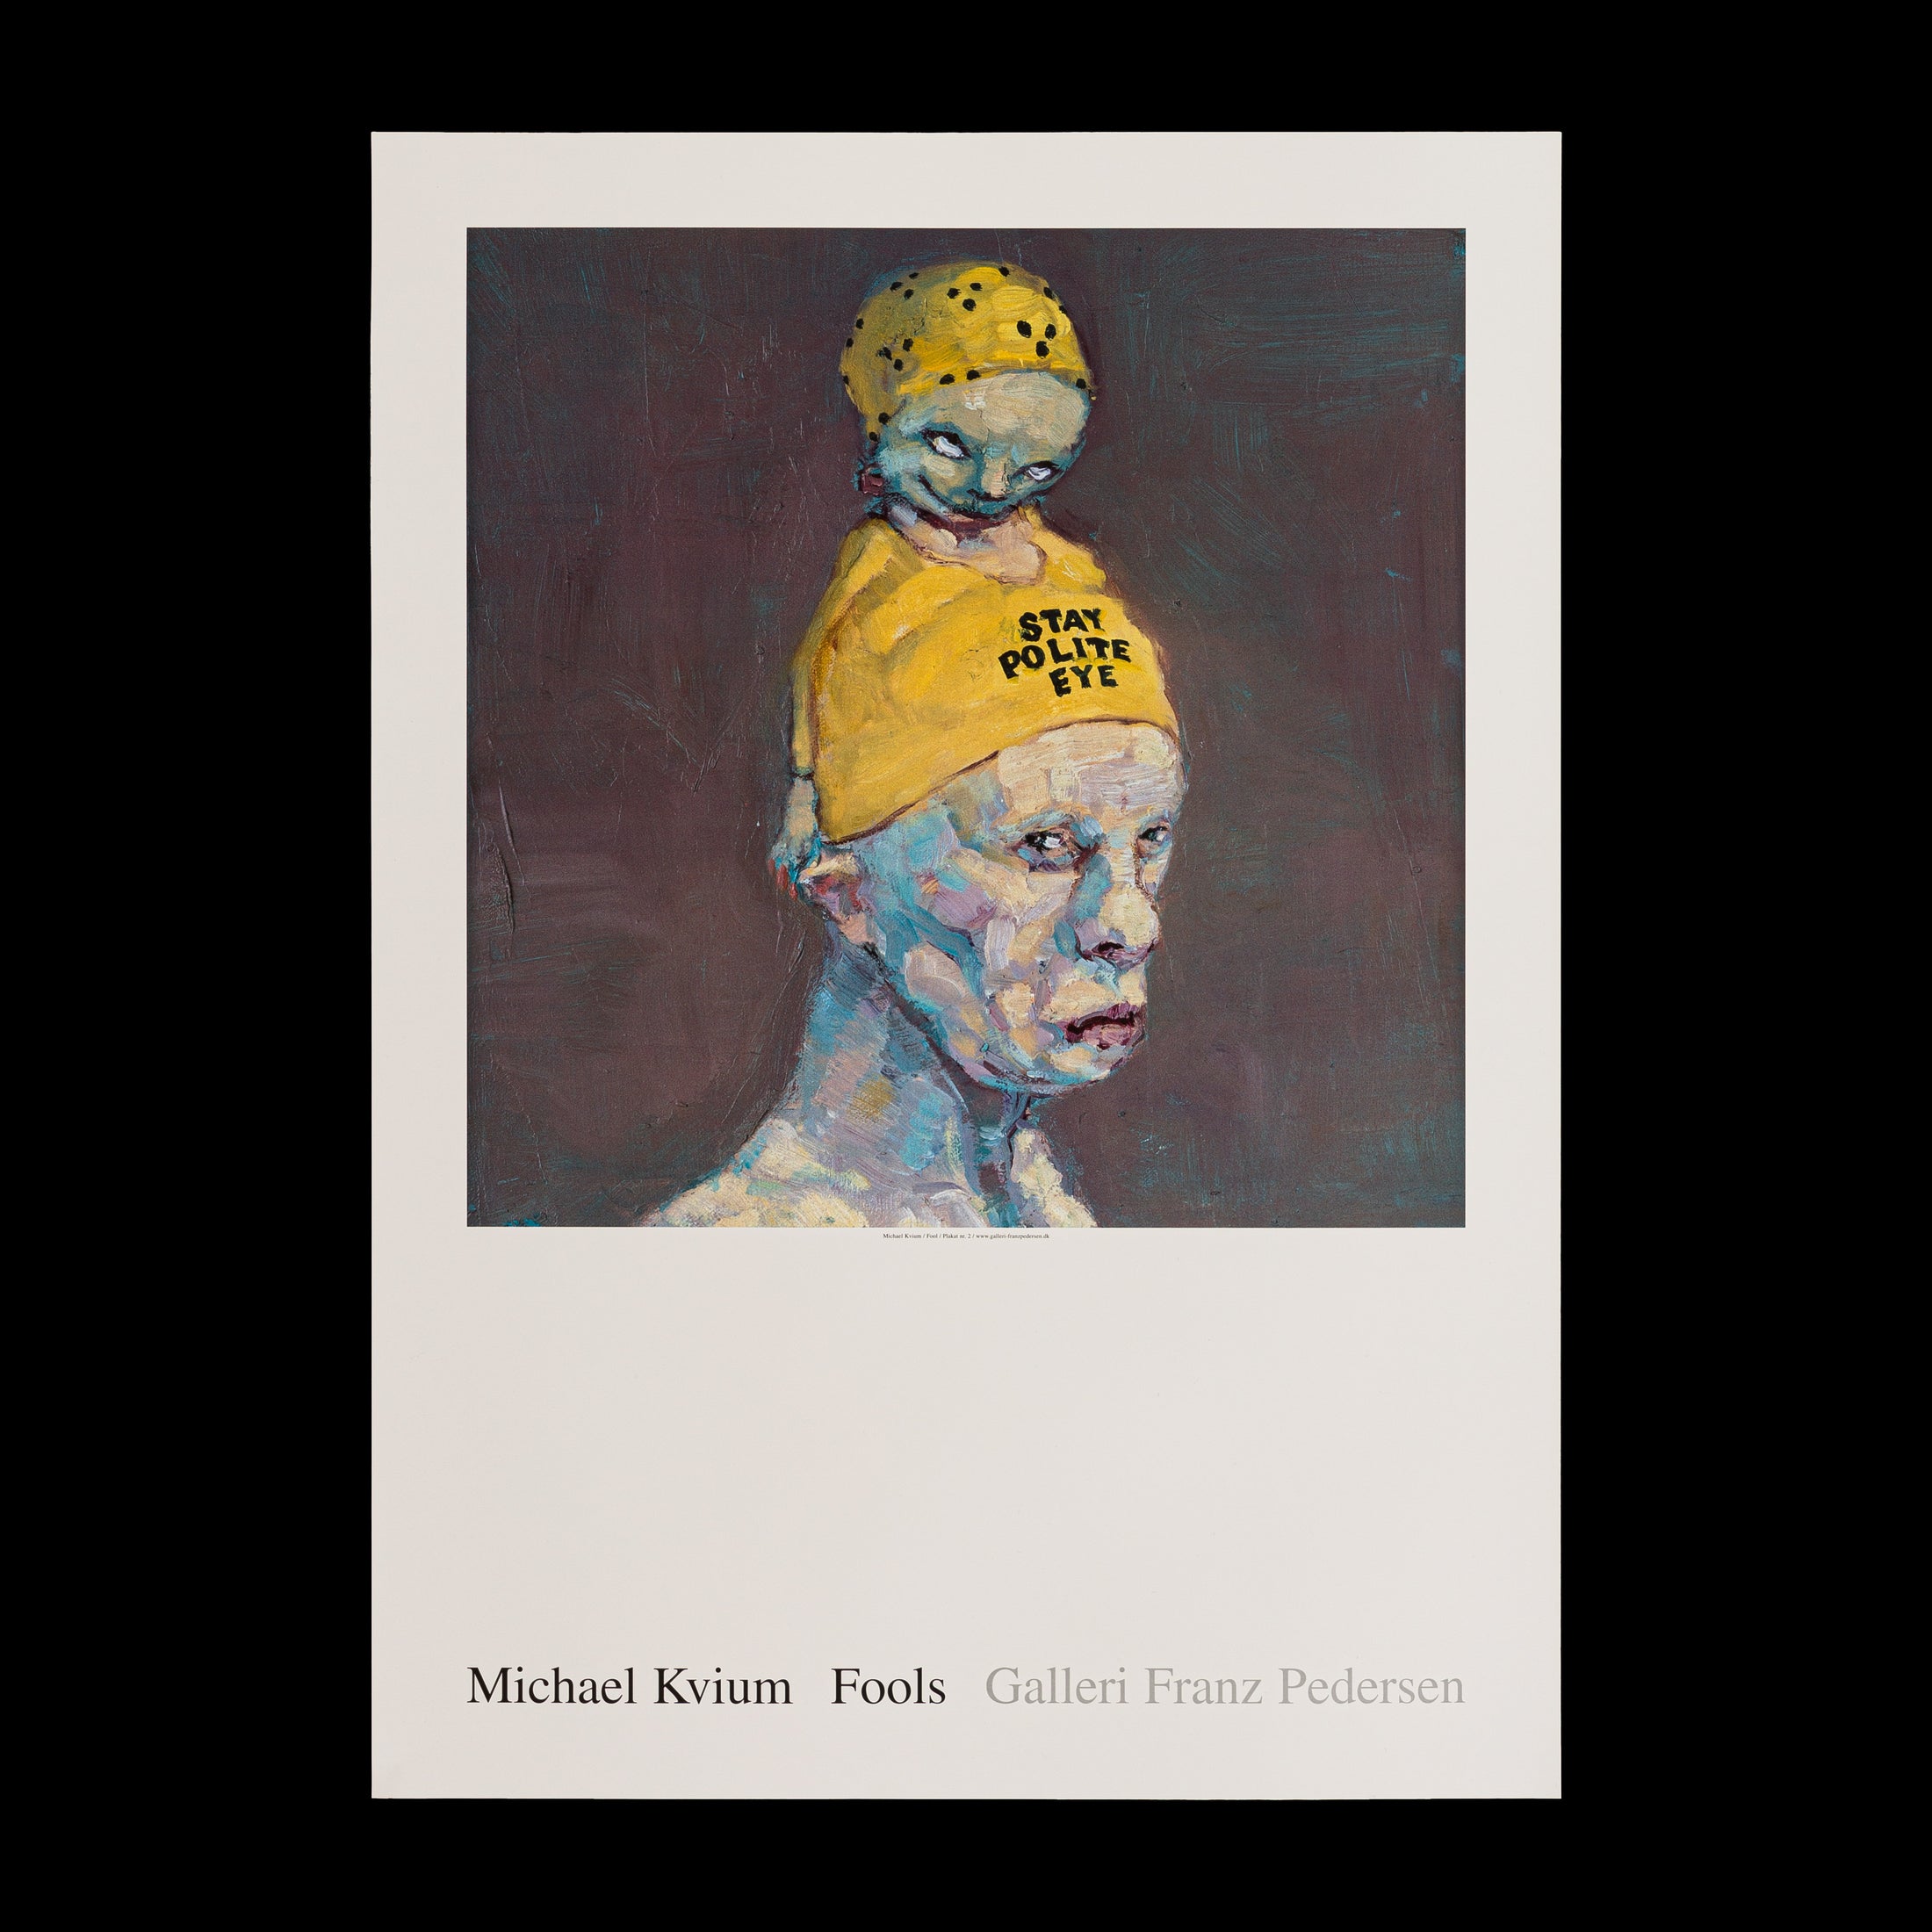 Michael Kvium plakat 'Fool no. 131' fra Galleri Franz Pedersen, der skildrer en sammensat figur med en ironisk 'STAY POLITE' hue, undersøger menneskets psyke og sociale masker.